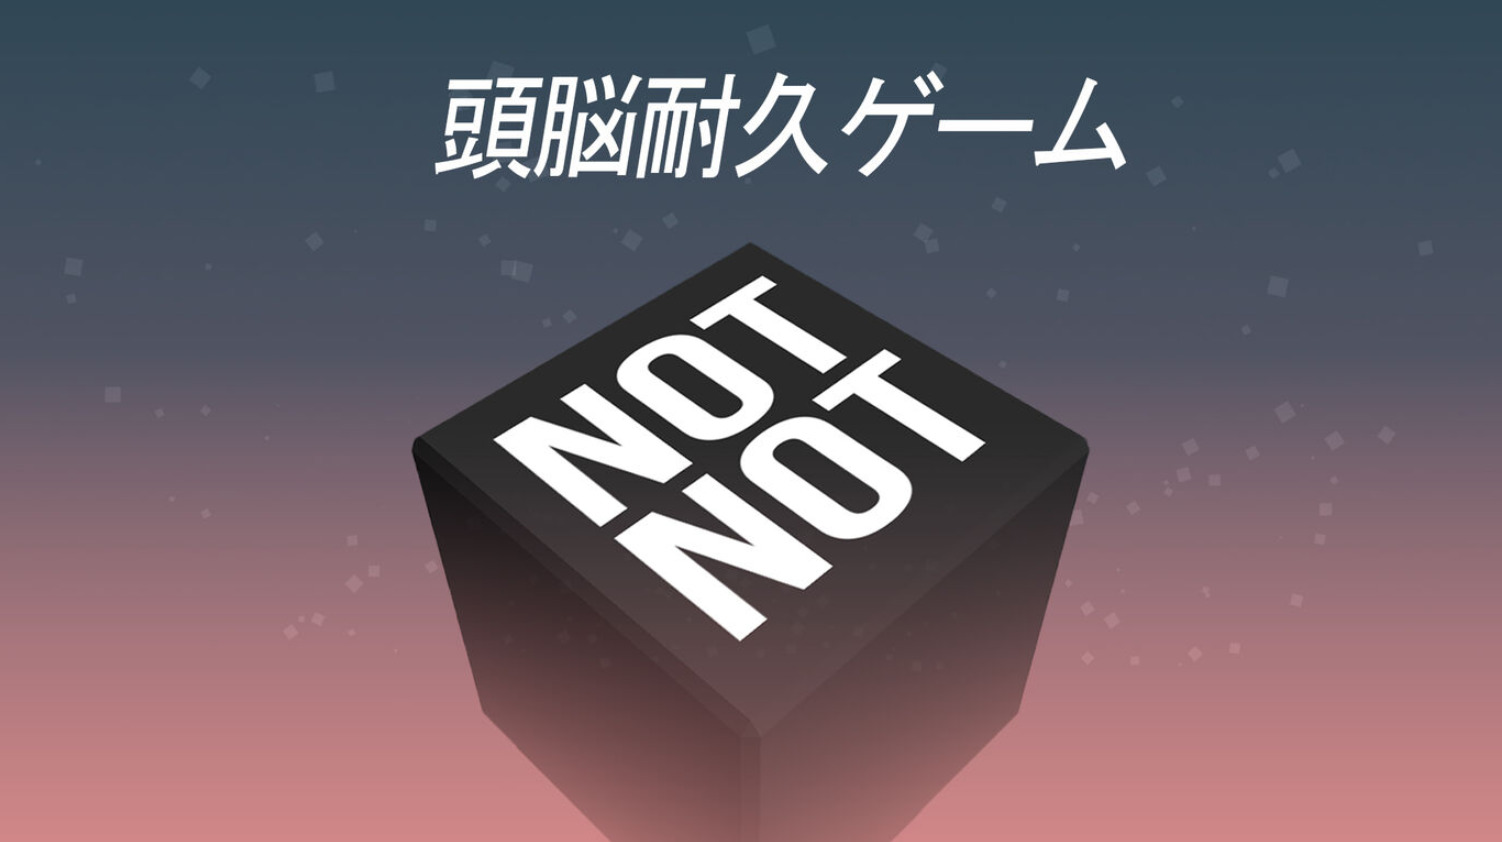 【頭脳耐久ゲーム】Not Not (じゃないじゃない) 世界中で1,000万ダウンロードされた謎ゲー紹介